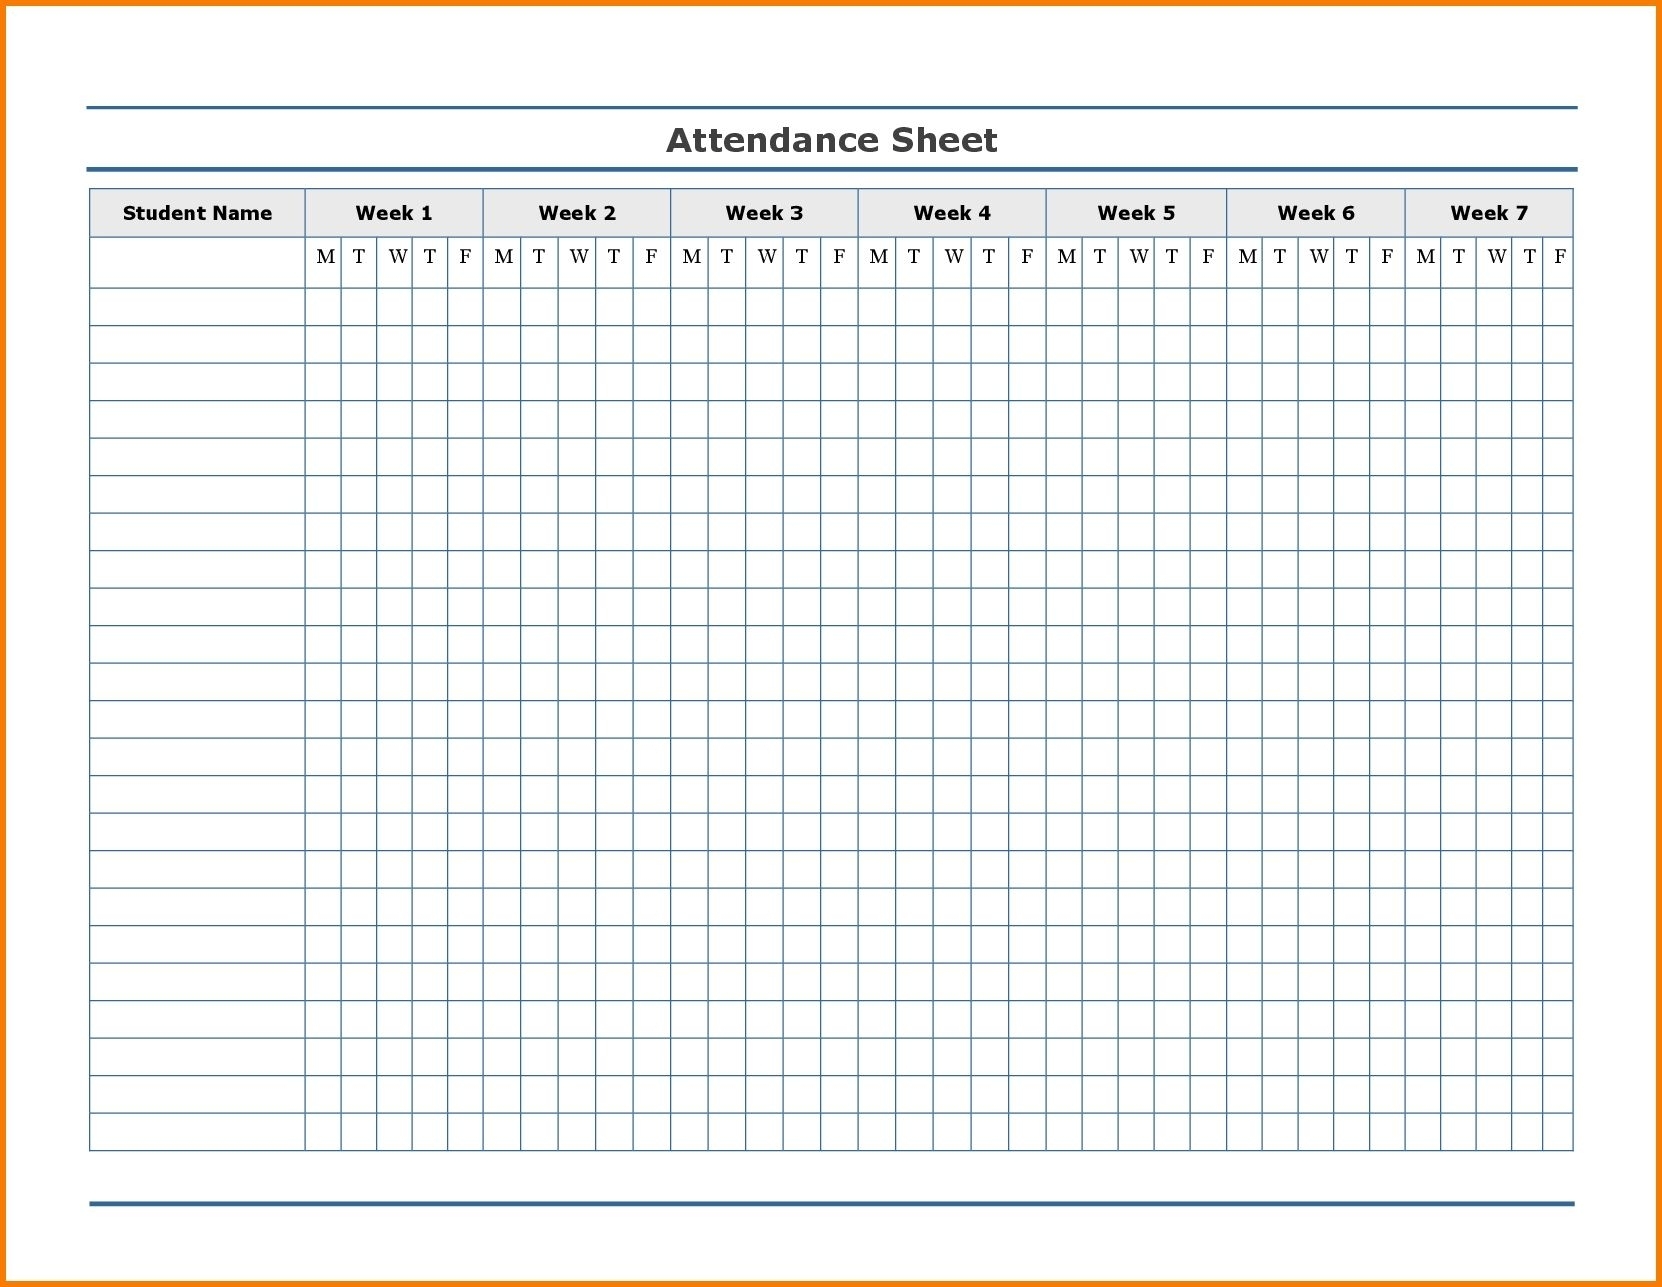 Free Employee Attendance Calendar | Employee Tracker with regard to 2020 Employee Attendance Calendar Printable